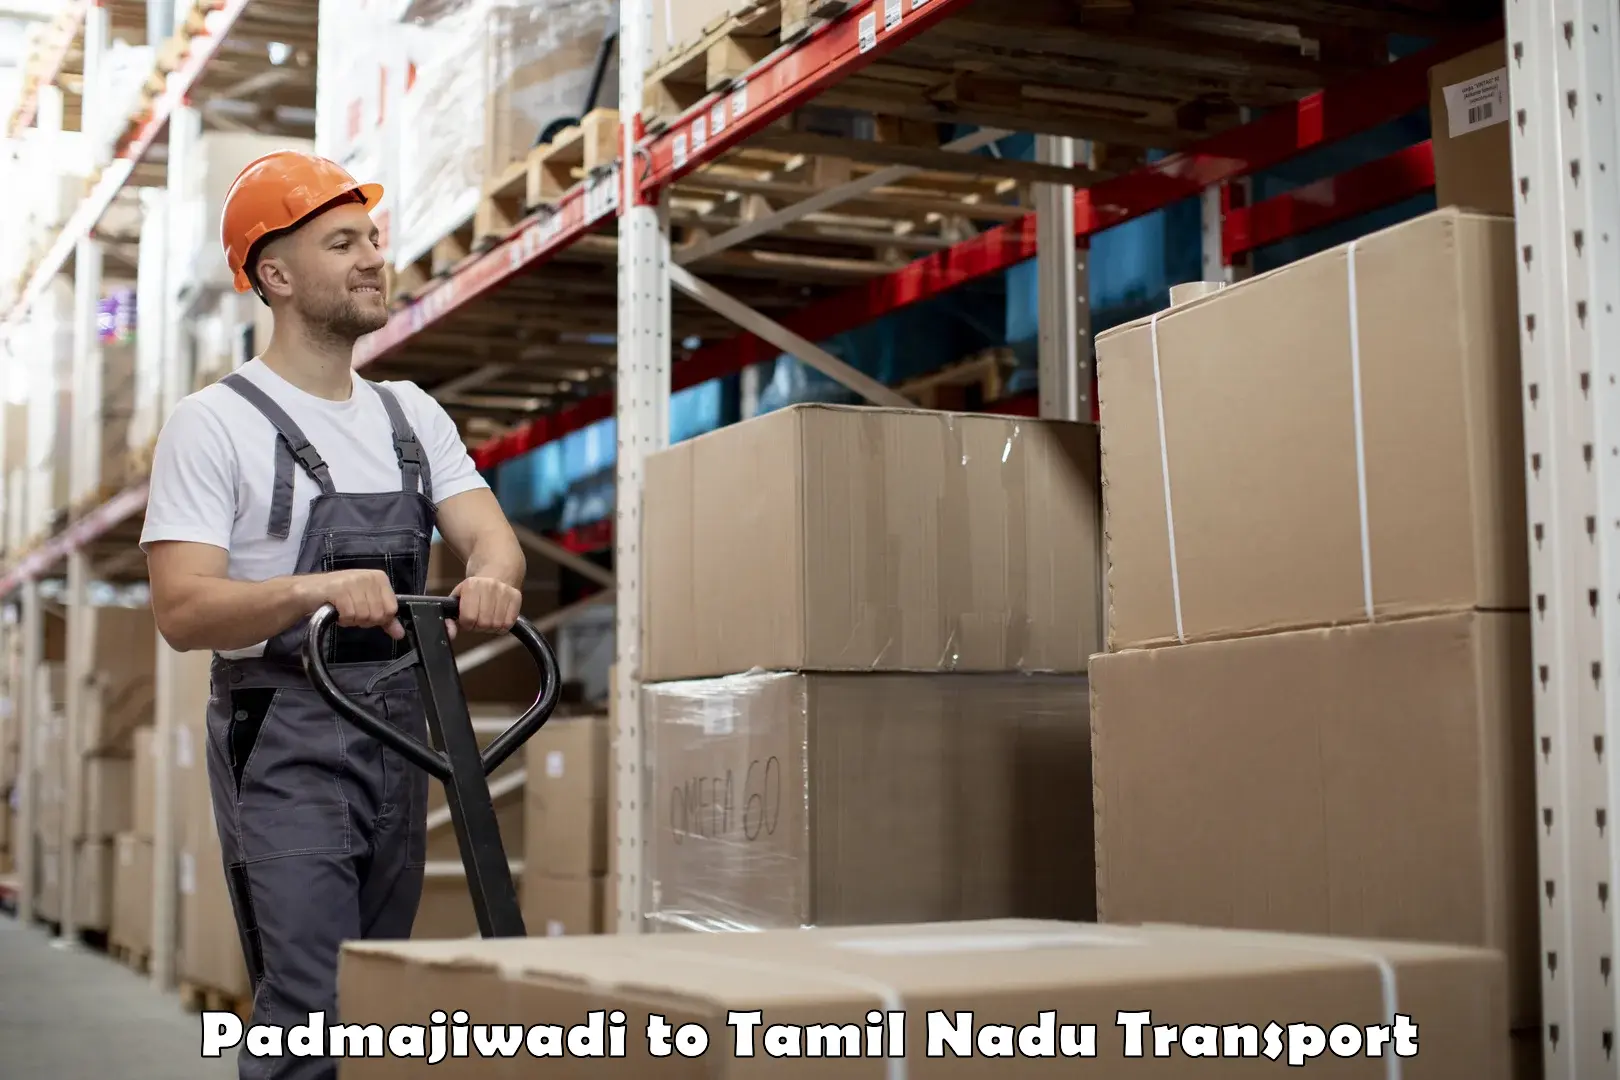 Furniture transport service Padmajiwadi to Thiruporur